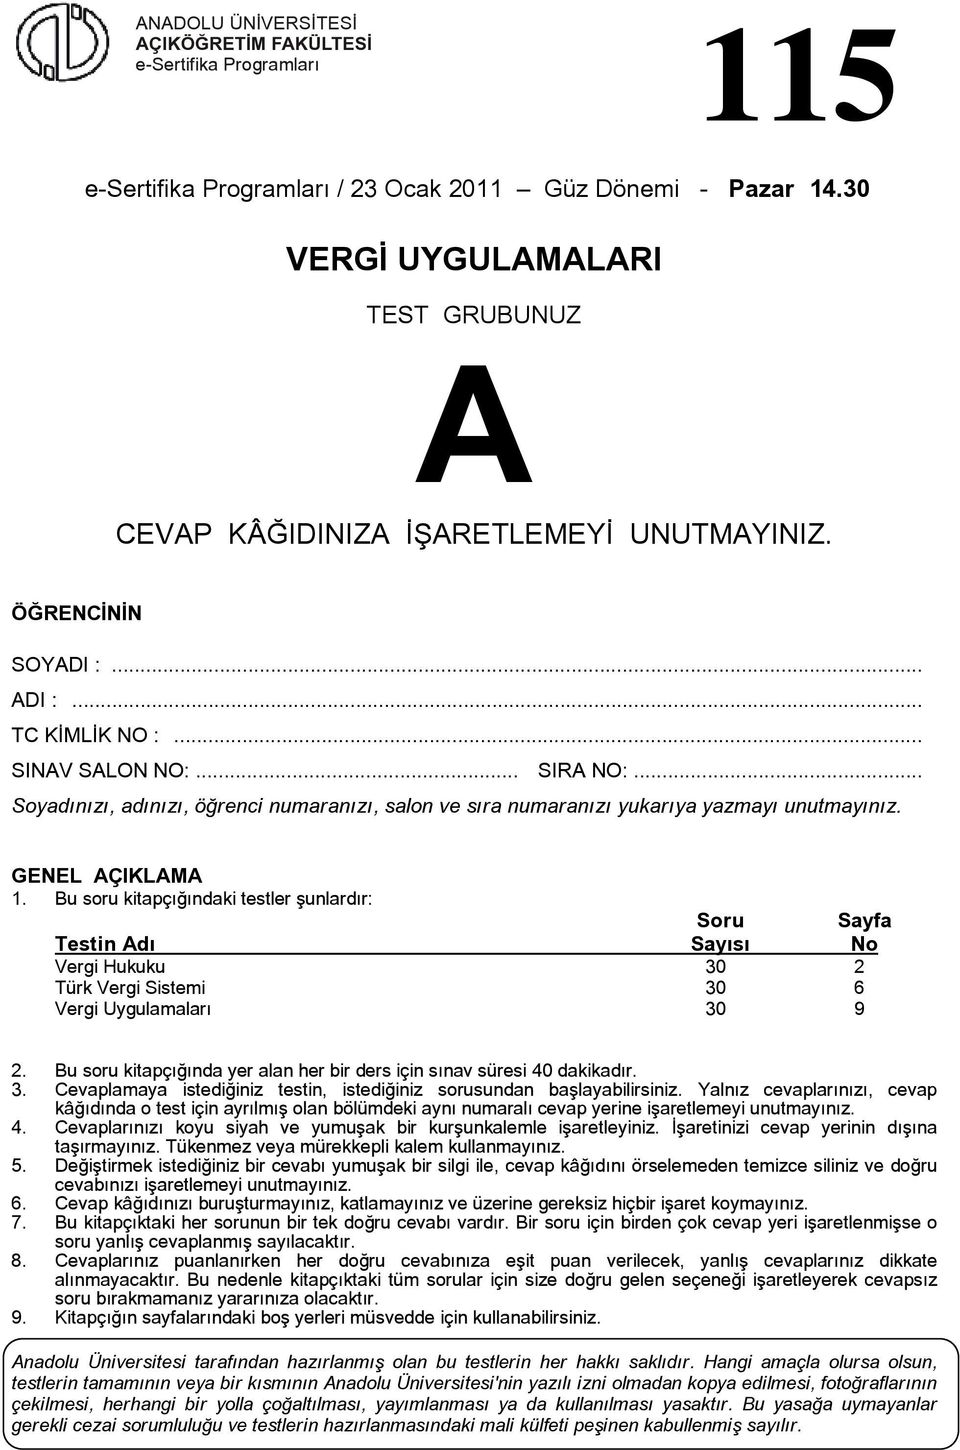 u soru kitapçığındaki testler şunlardır: Soru Sayfa Testin dı Sayısı No Vergi Hukuku 30 2 Türk Vergi Sistemi 30 6 Vergi Uygulamaları 30 9 2.